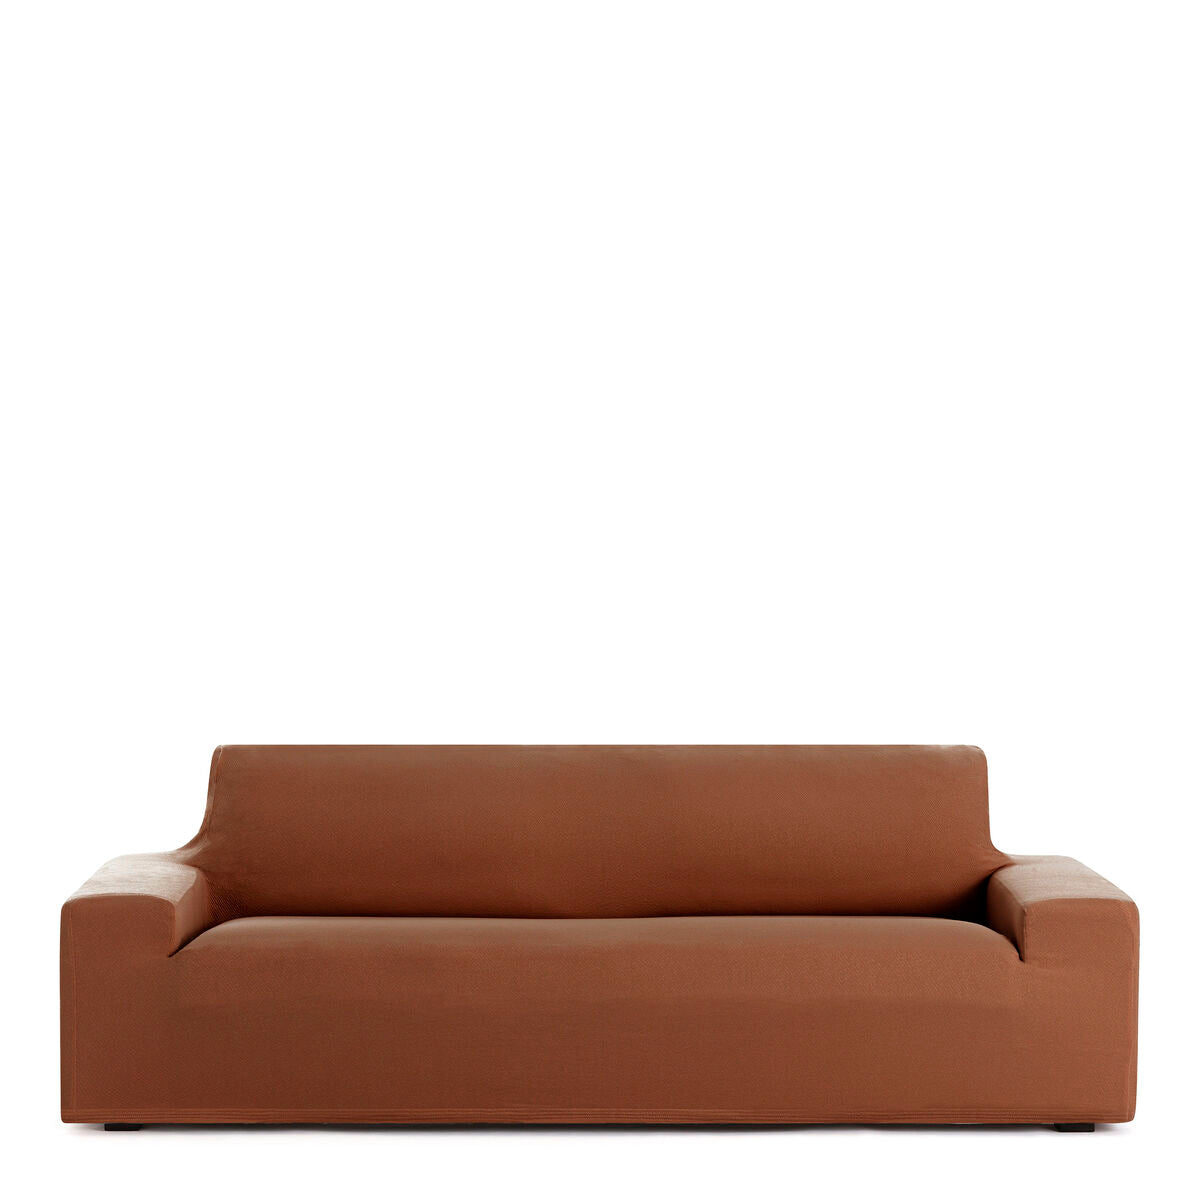 Copertina di divano marrone Eysa 70 x 110 x 170 cm